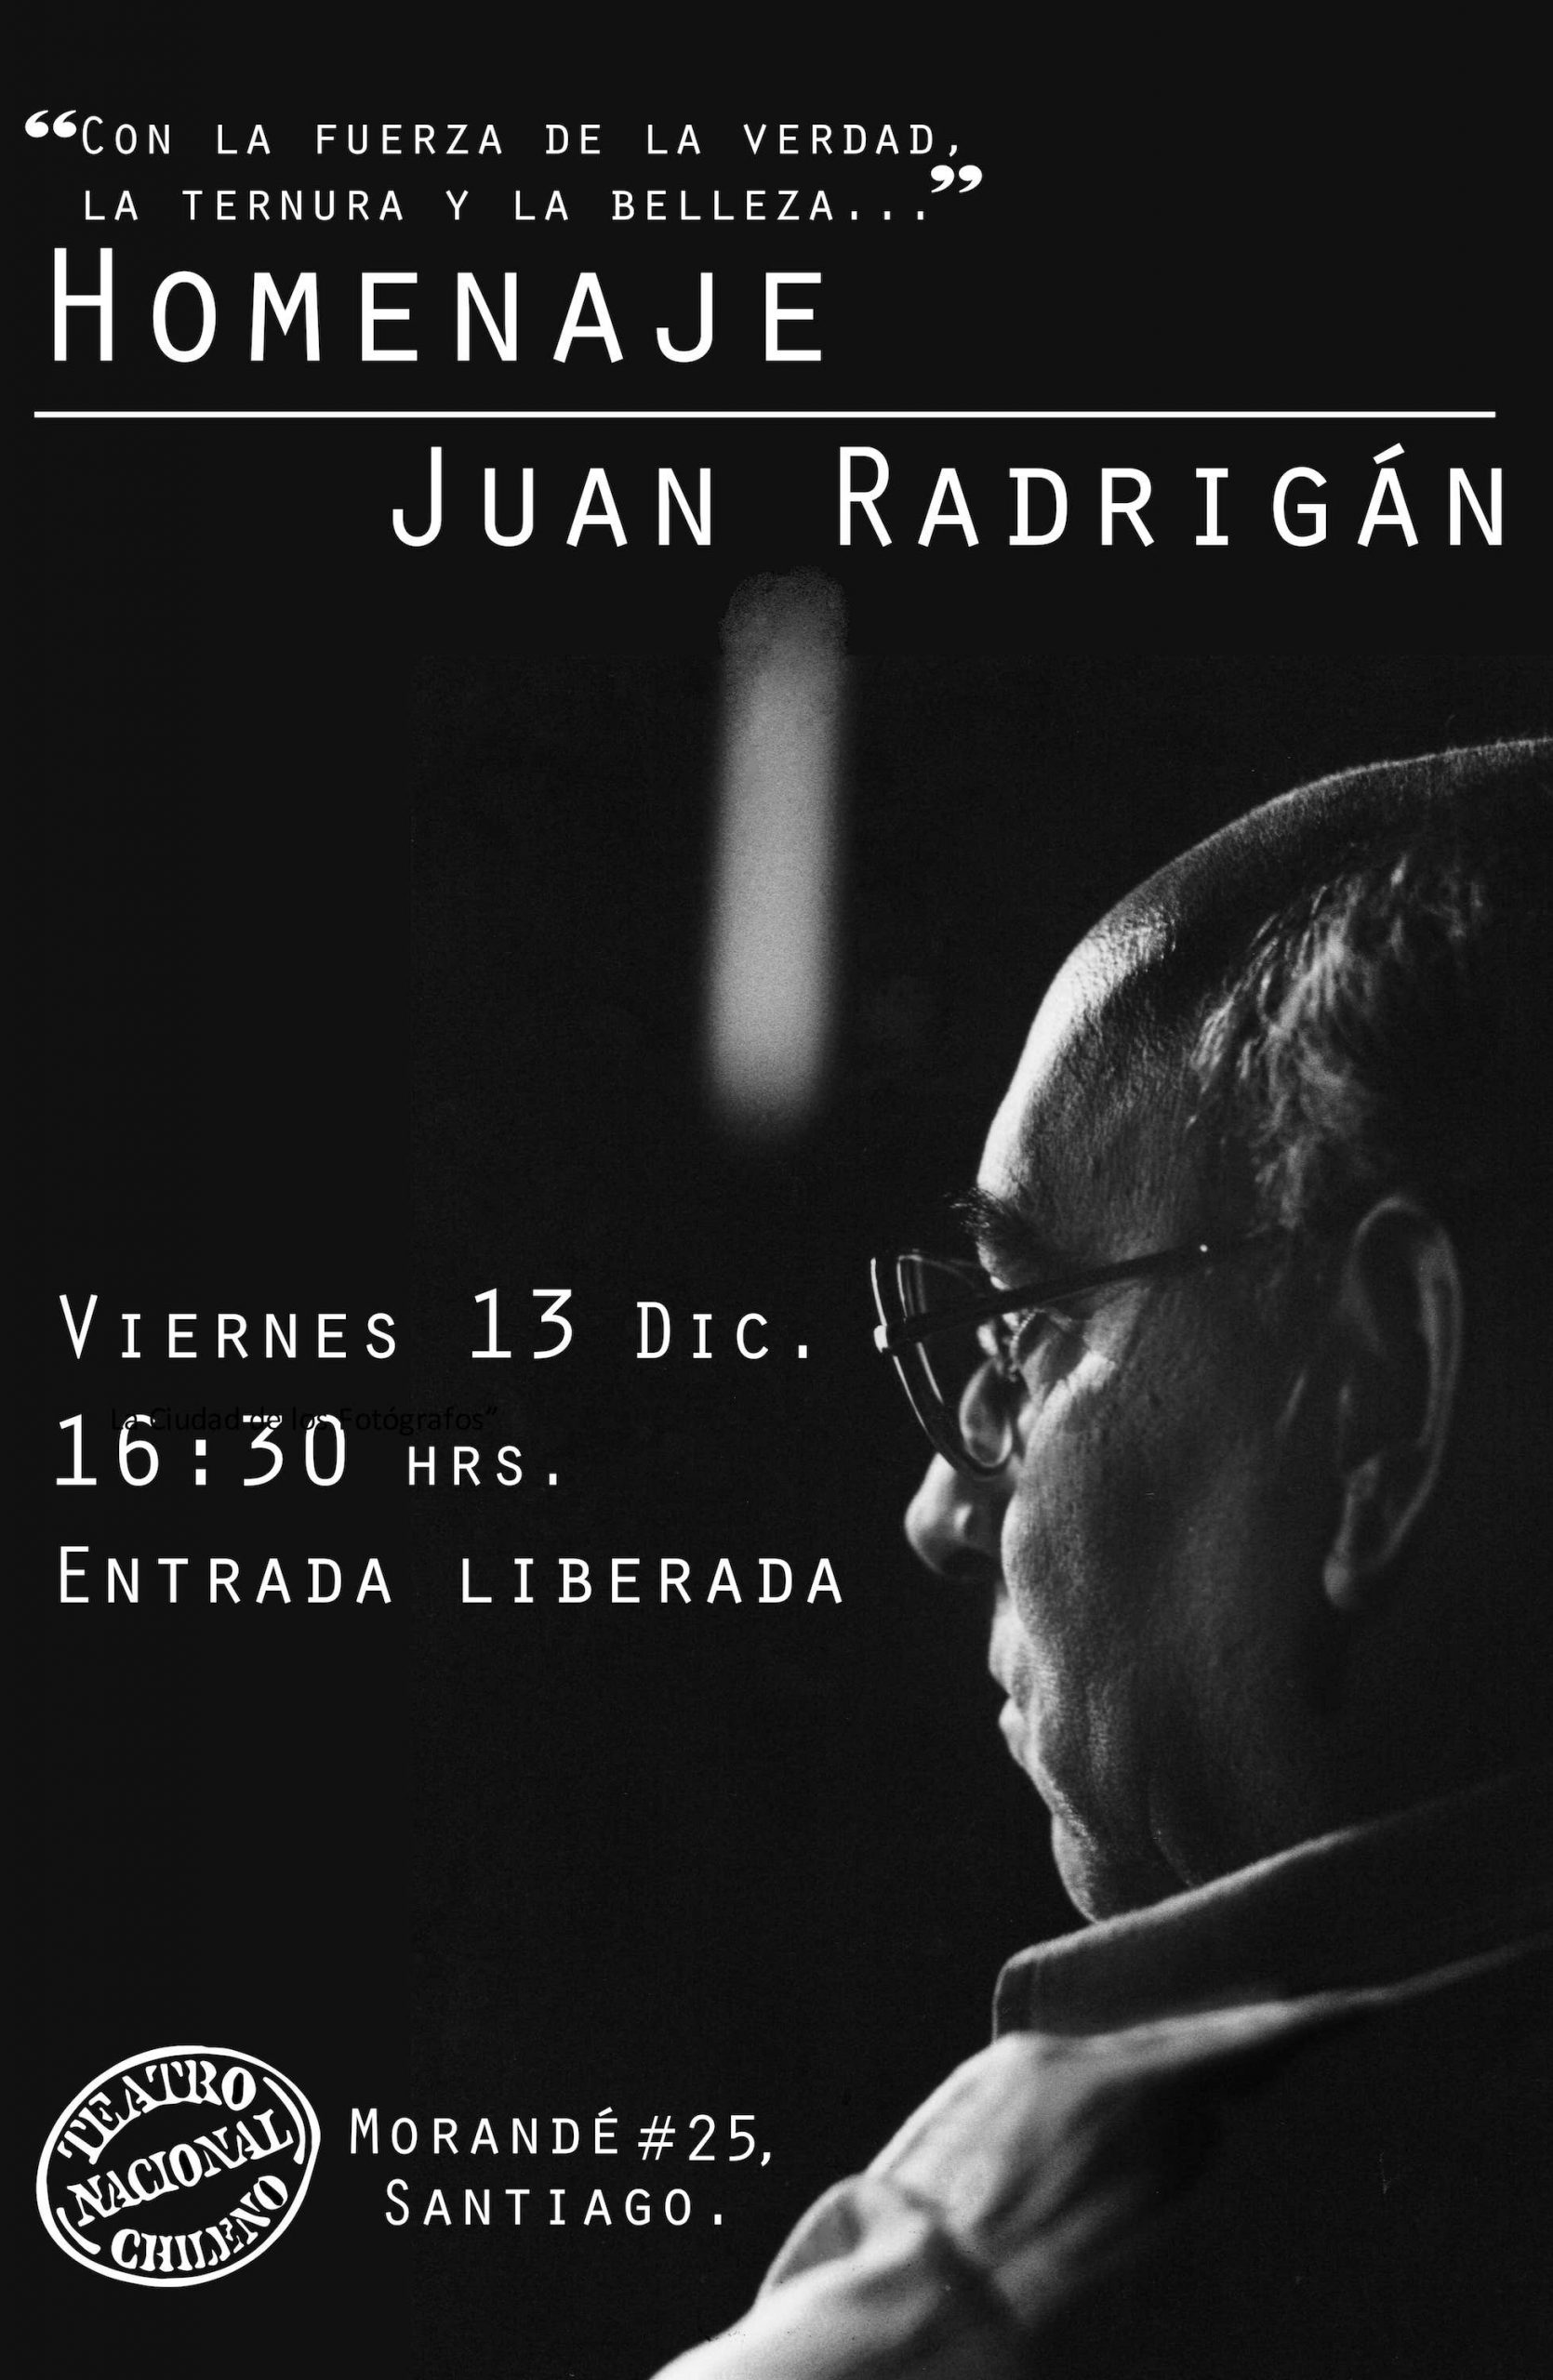 Homenaje a Juan Radrigán en el TNCH: “Con la fuerza de la verdad, la ternura y la belleza”